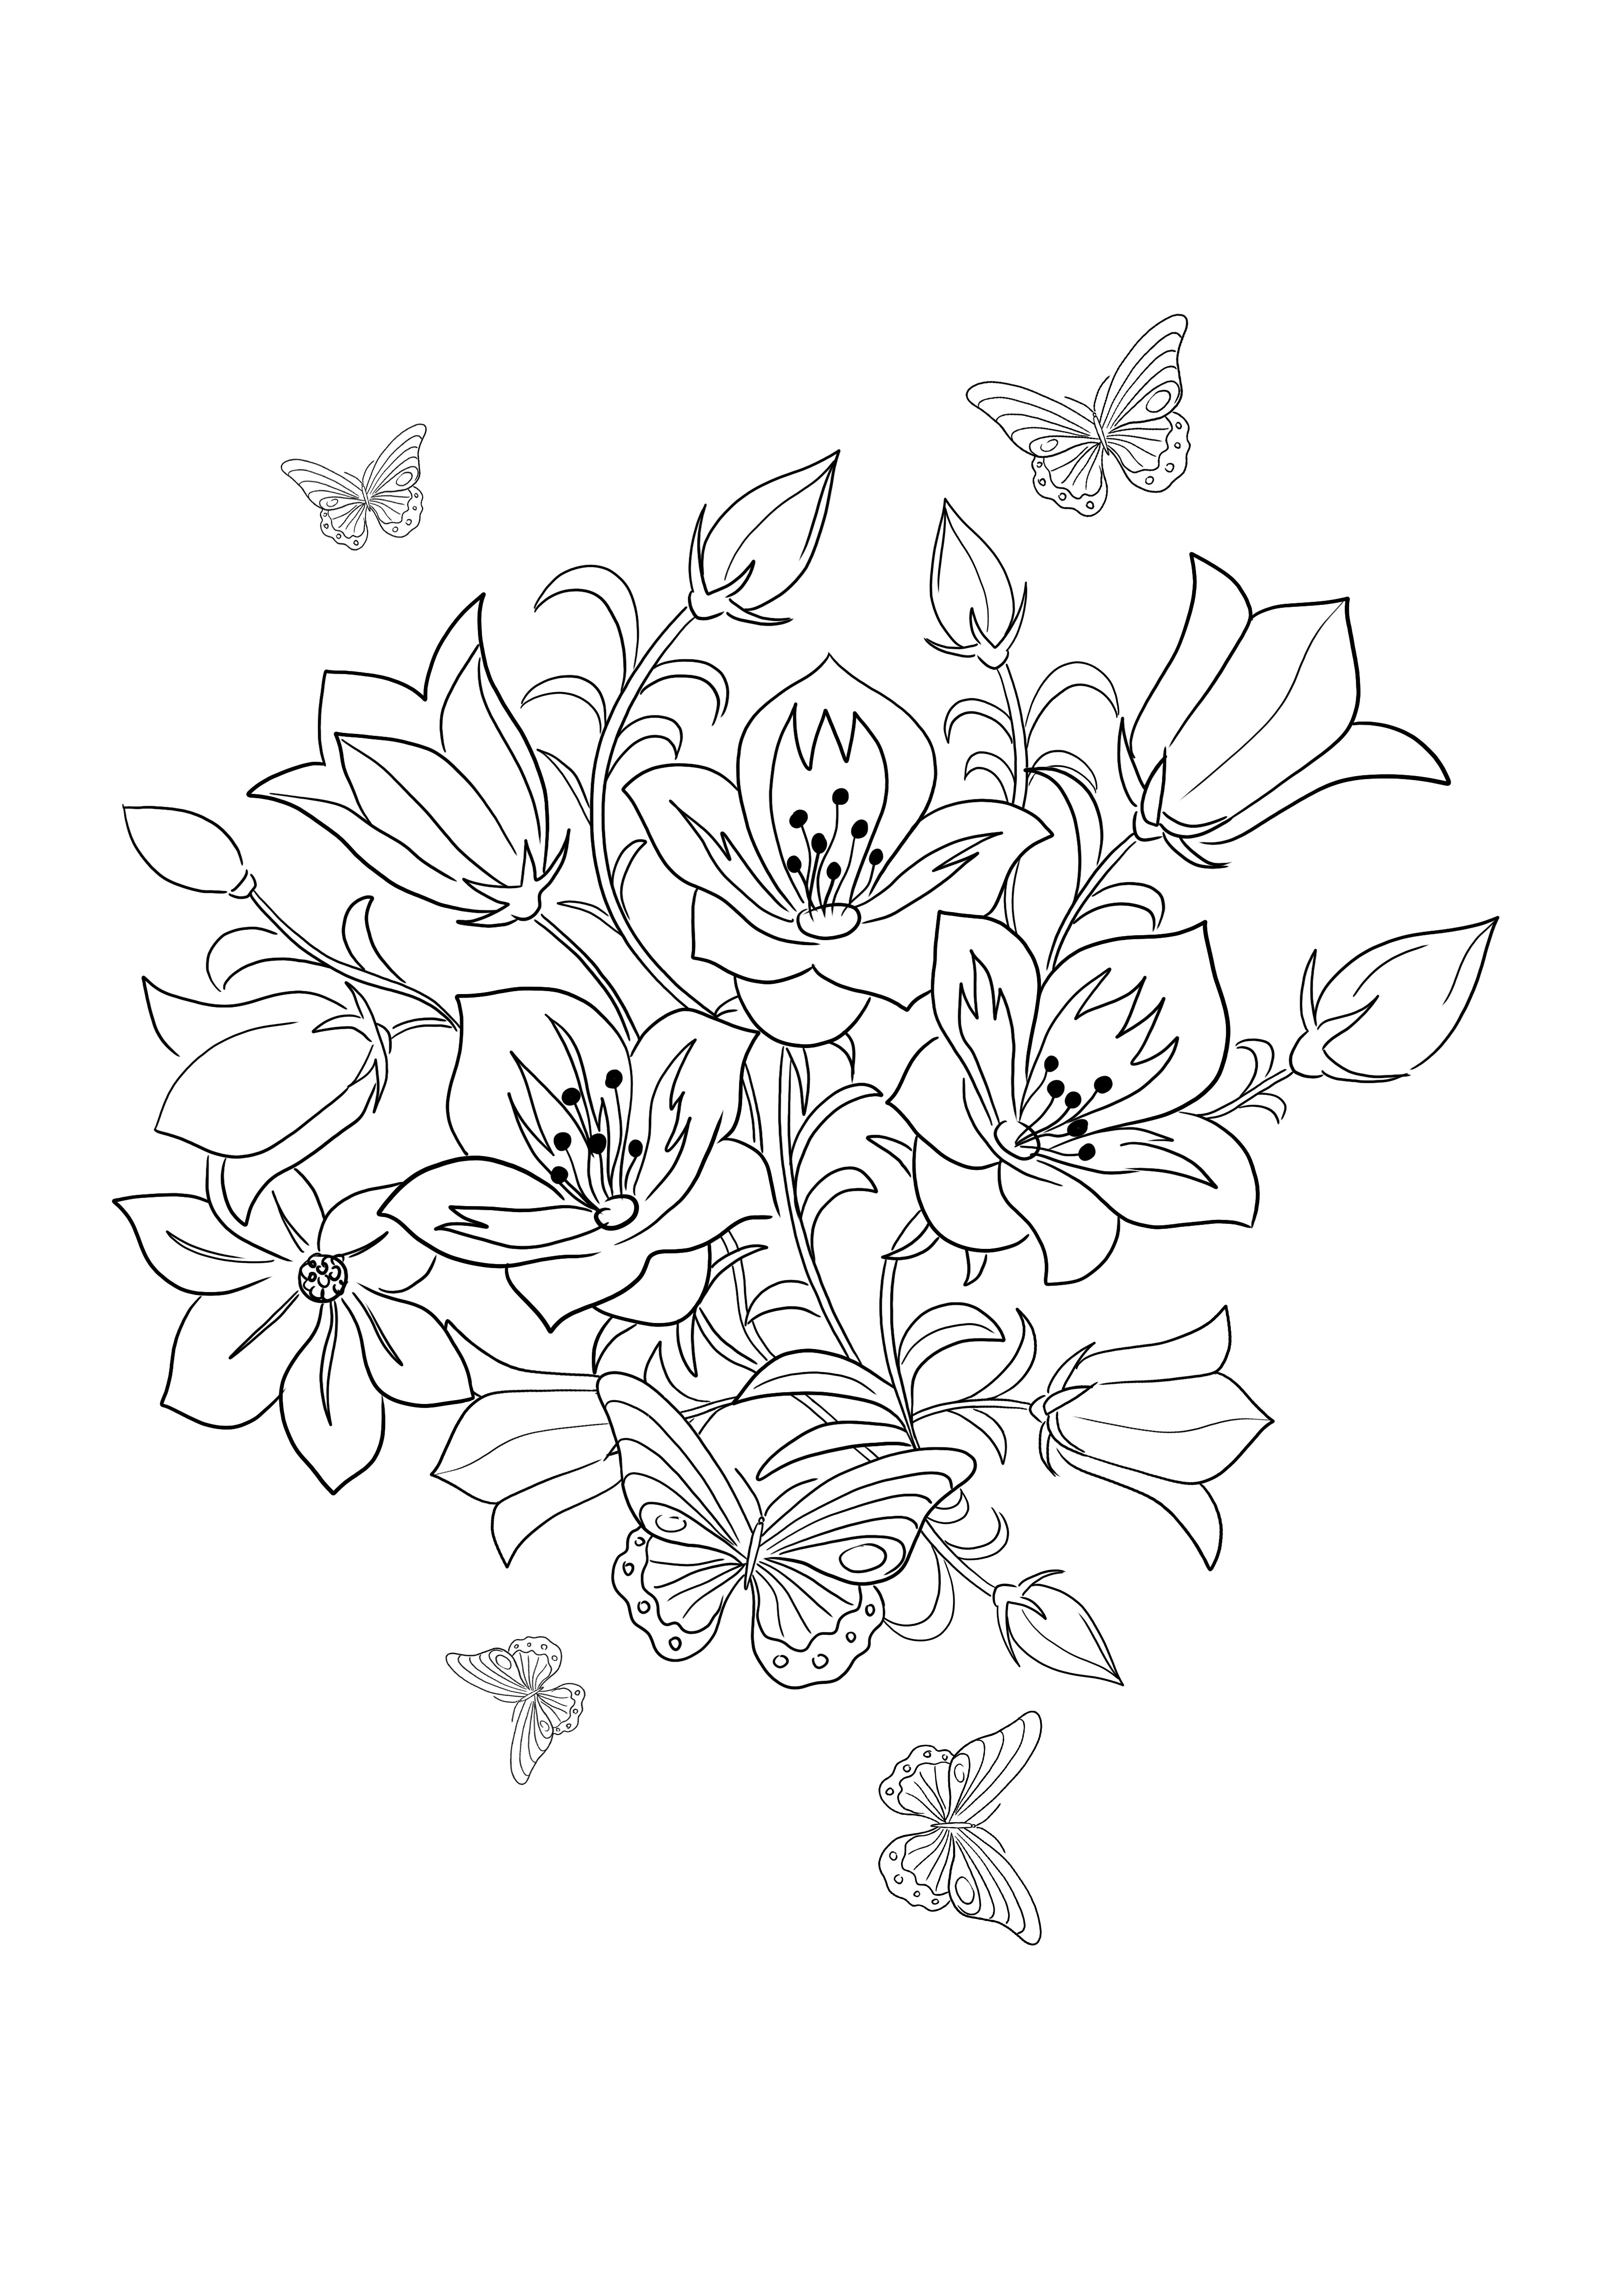 La página para colorear de Skylark and Flowers fácil y simple está lista para ser utilizada